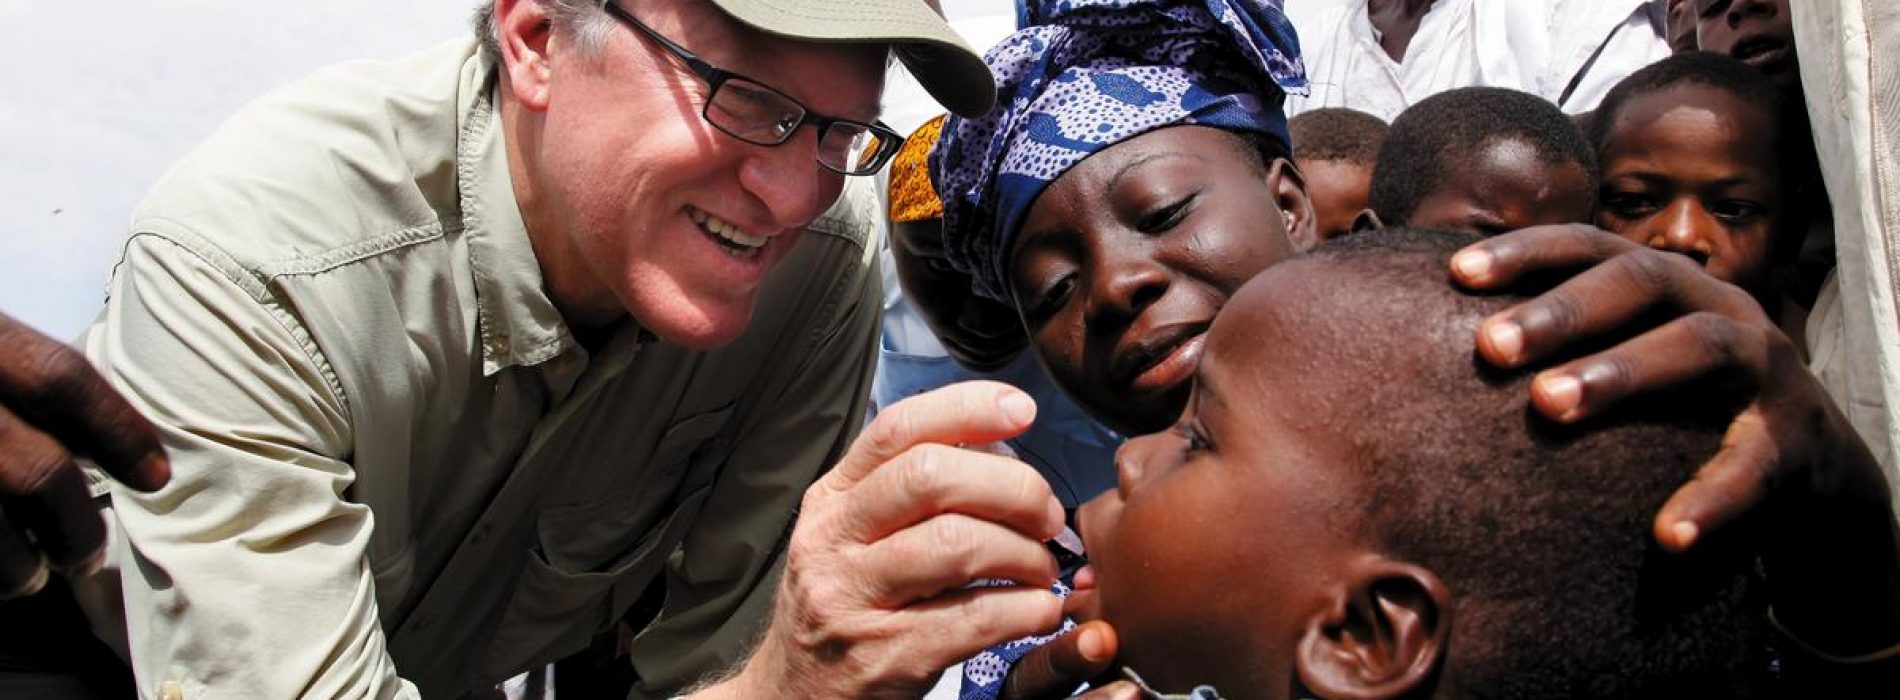 Gates financierde poliovaccin dat poliovirussen veroorzaakt – WHO geeft toe